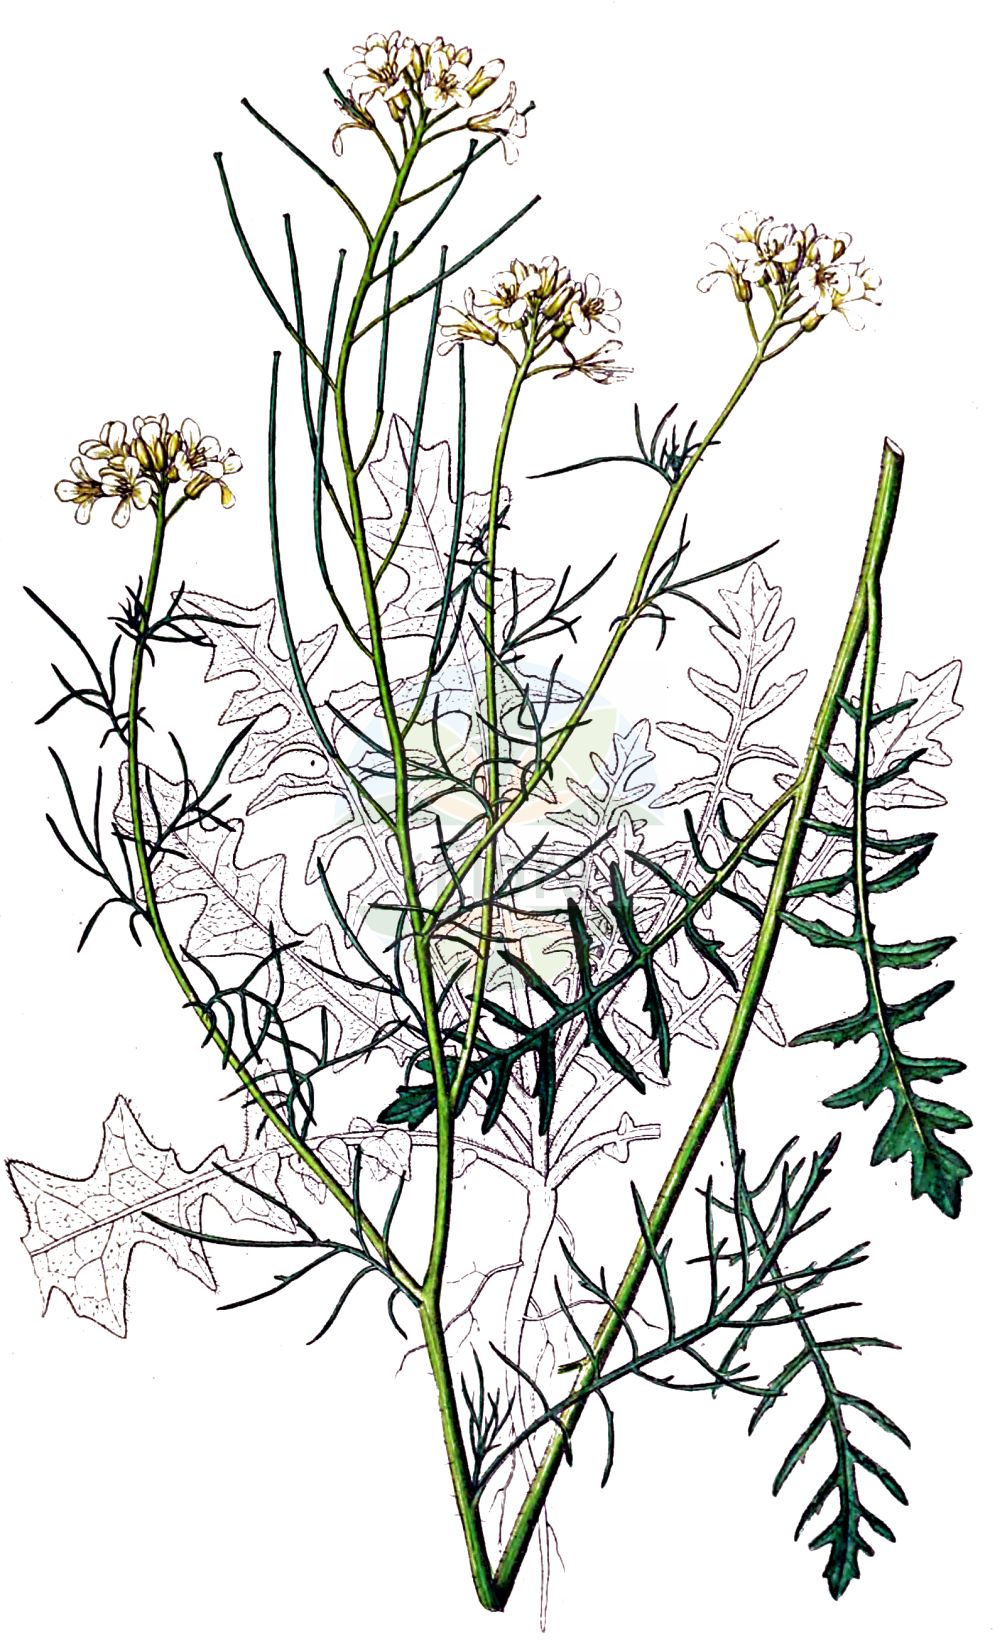 Historische Abbildung von Sisymbrium altissimum (Ungarische Rauke - Tall Rocket). Das Bild zeigt Blatt, Bluete, Frucht und Same. ---- Historical Drawing of Sisymbrium altissimum (Ungarische Rauke - Tall Rocket). The image is showing leaf, flower, fruit and seed.(Sisymbrium altissimum,Ungarische Rauke,Tall Rocket,Sisymbrium altissimum,Sisymbrium pannonicum,Sisymbrium sinapistrum,Ungarische Rauke,Riesen-Rauke,Tall Rocket,Jim Hill Mustard,Tall Tumblemustard,Tumble Mustard,Sisymbrium,Rauke,Hedgemustard,Brassicaceae,Kreuzblütler,Cabbage family,Blatt,Bluete,Frucht,Same,leaf,flower,fruit,seed,Dietrich (1833-1844))